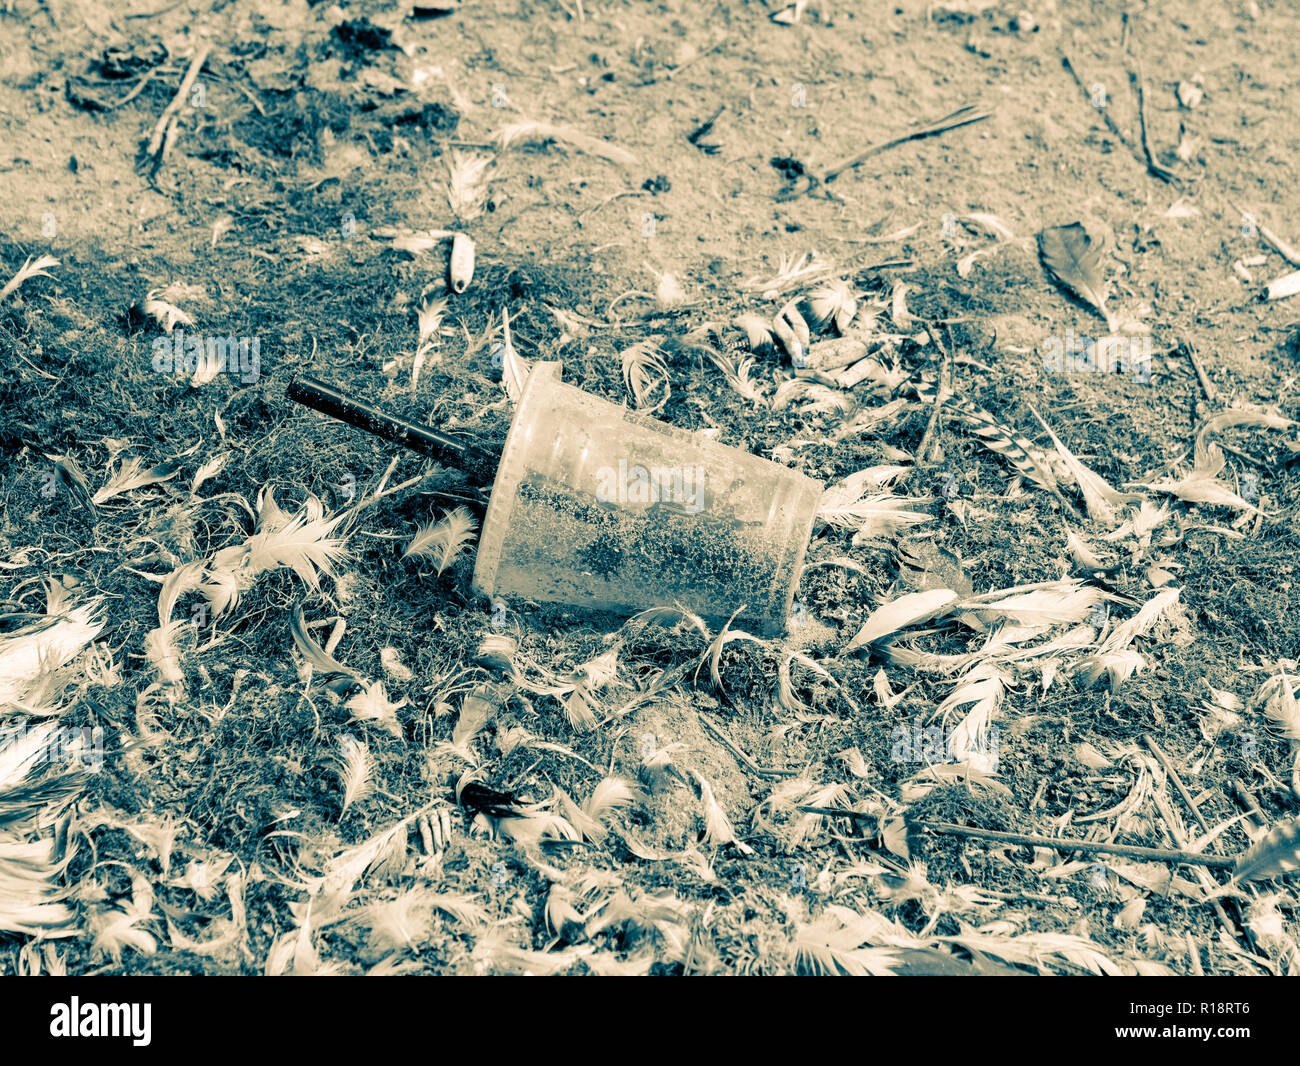 Tasse à emporter en plastique avec paille jonchant le sable de plage, entre les plumes des oiseaux, Pays-Bas Banque D'Images